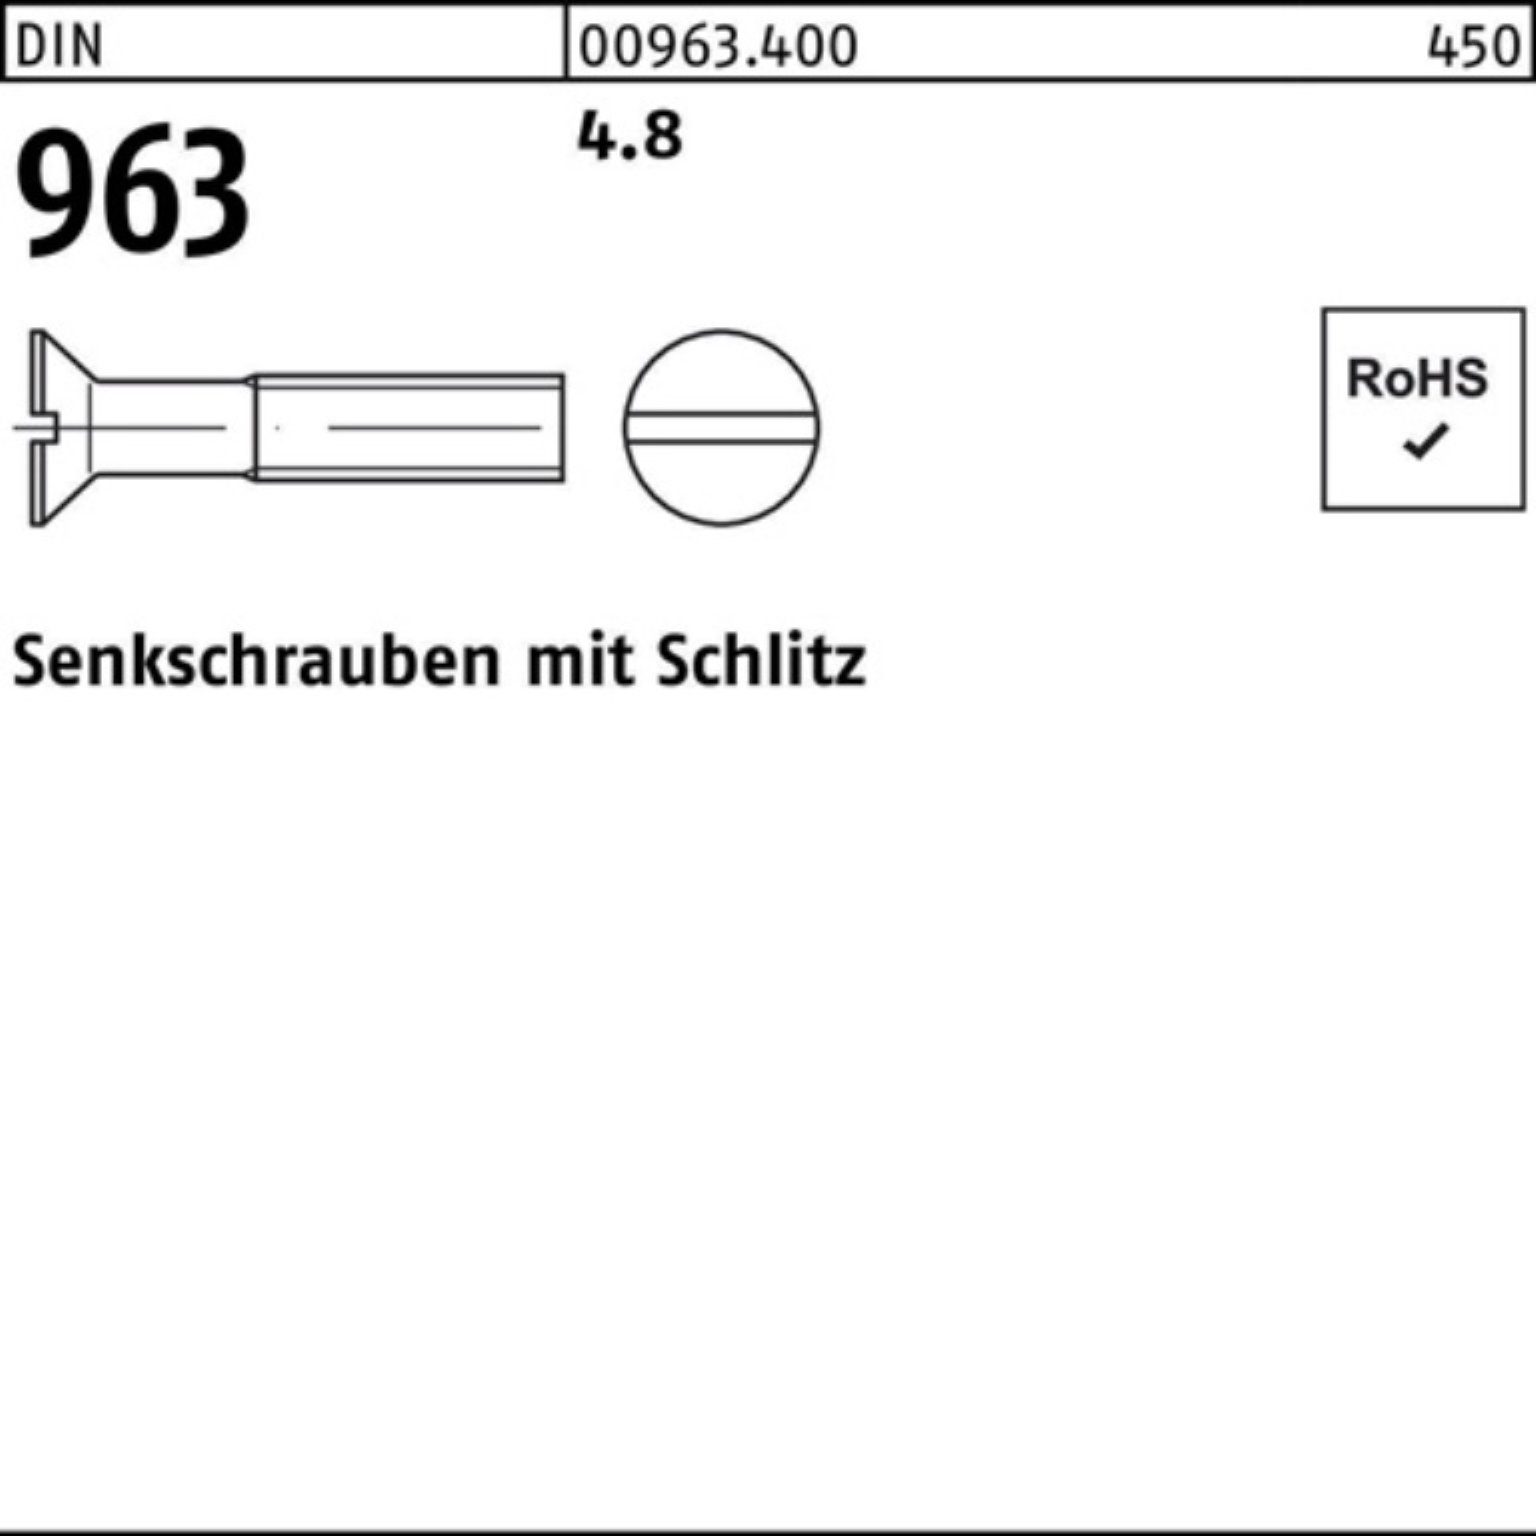 2000er 2000 Senkschraube Pack 963 DIN Senkschraube Stück Reyher DIN 5 Schlitz 4.8 M2x 963